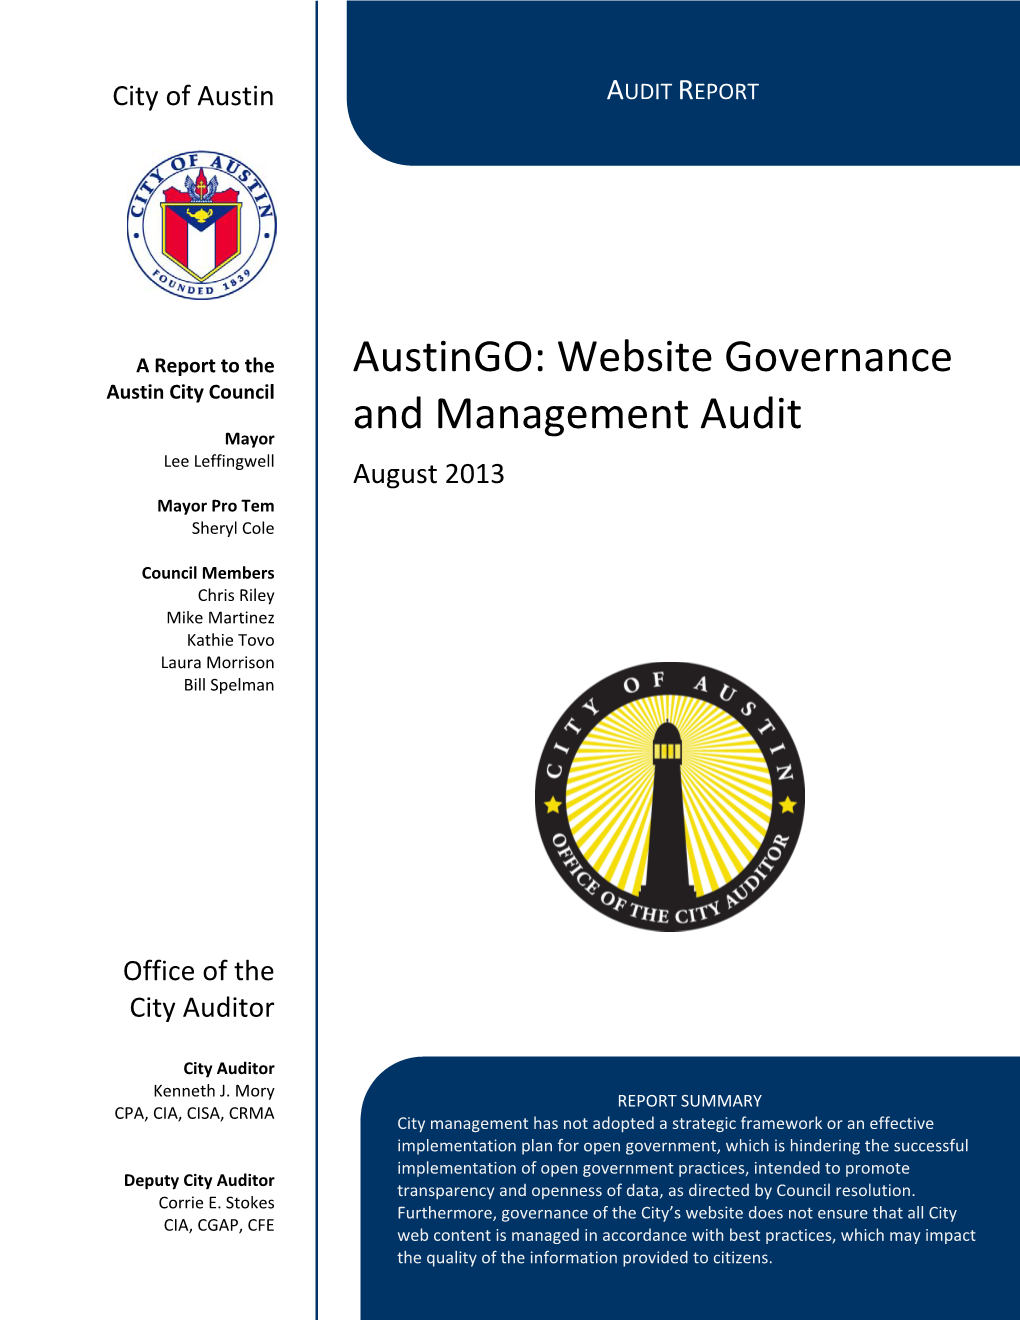 Austingo: Website Governance and Management Audit